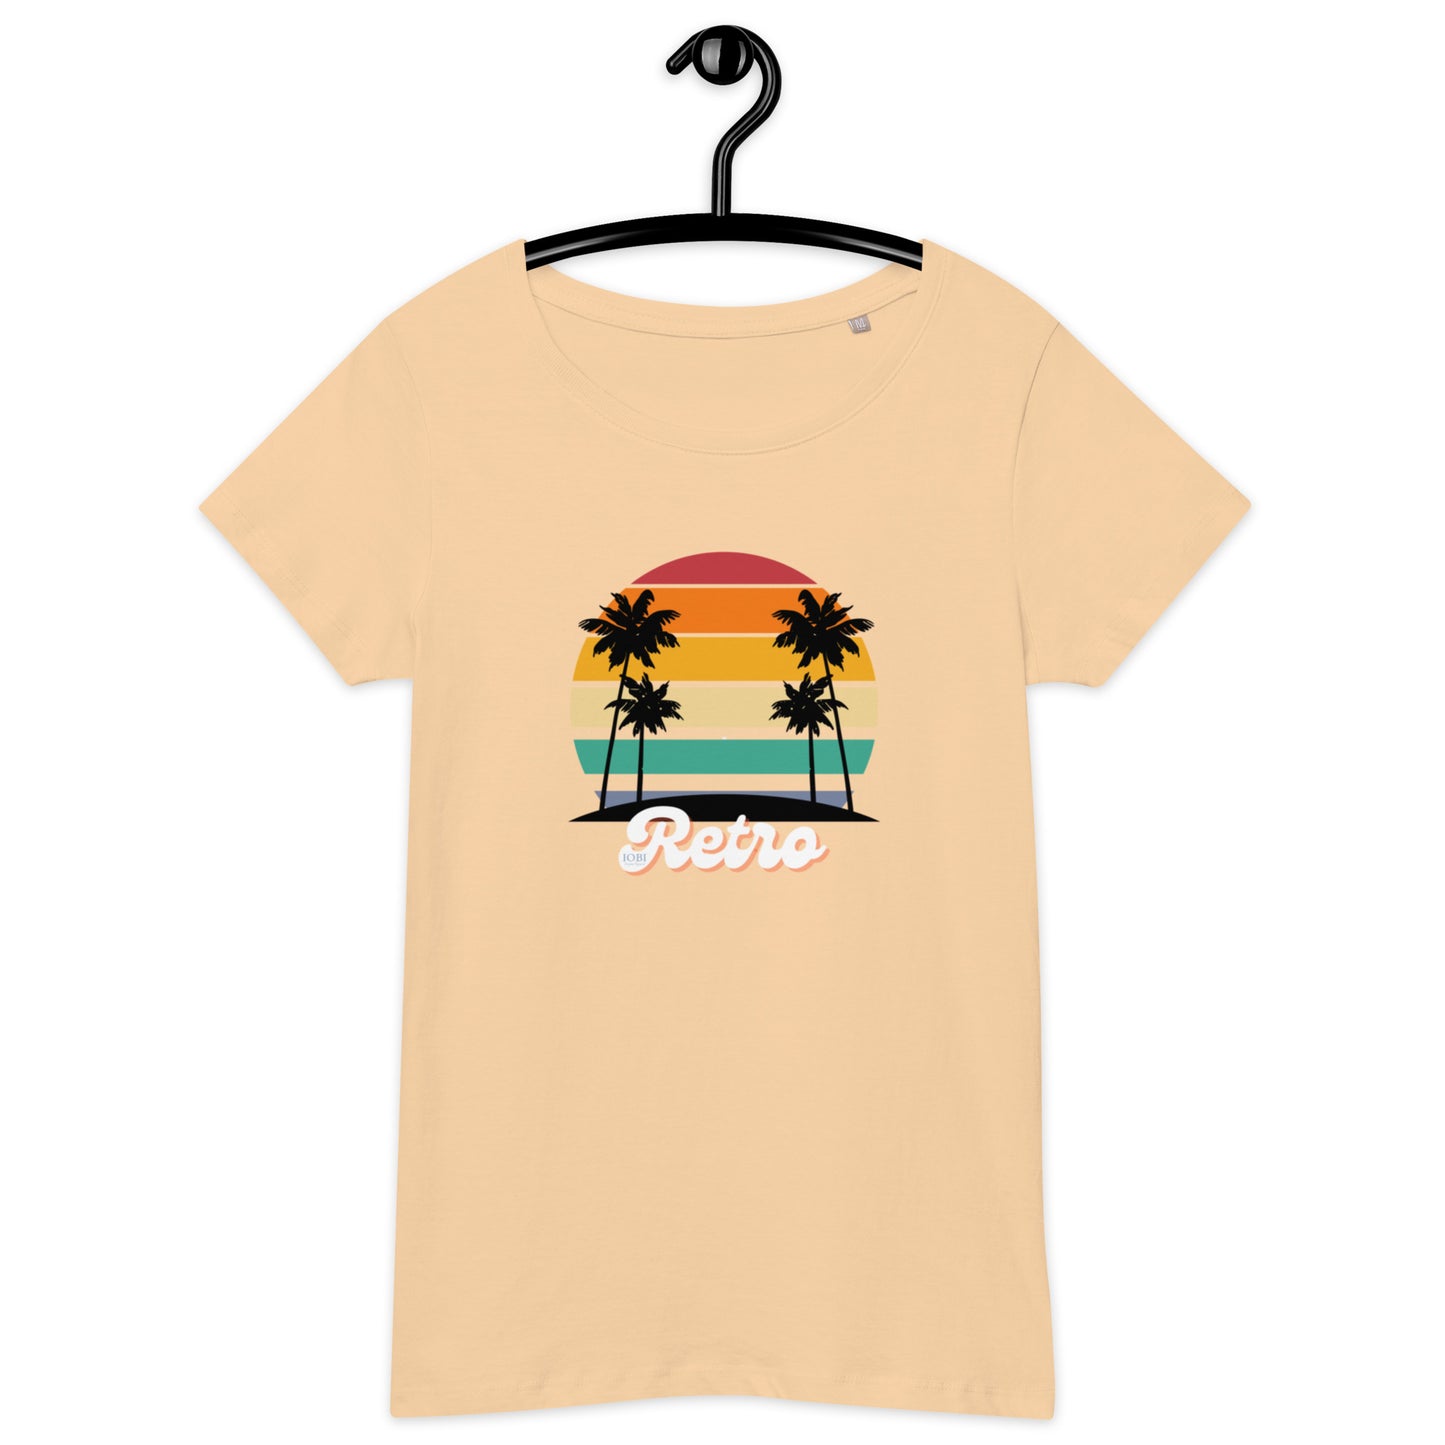 Women’s Basic Organic Eco-Friendly T-Shirt Soft Scoop Neck Retro Design by IOBI Original Apparel